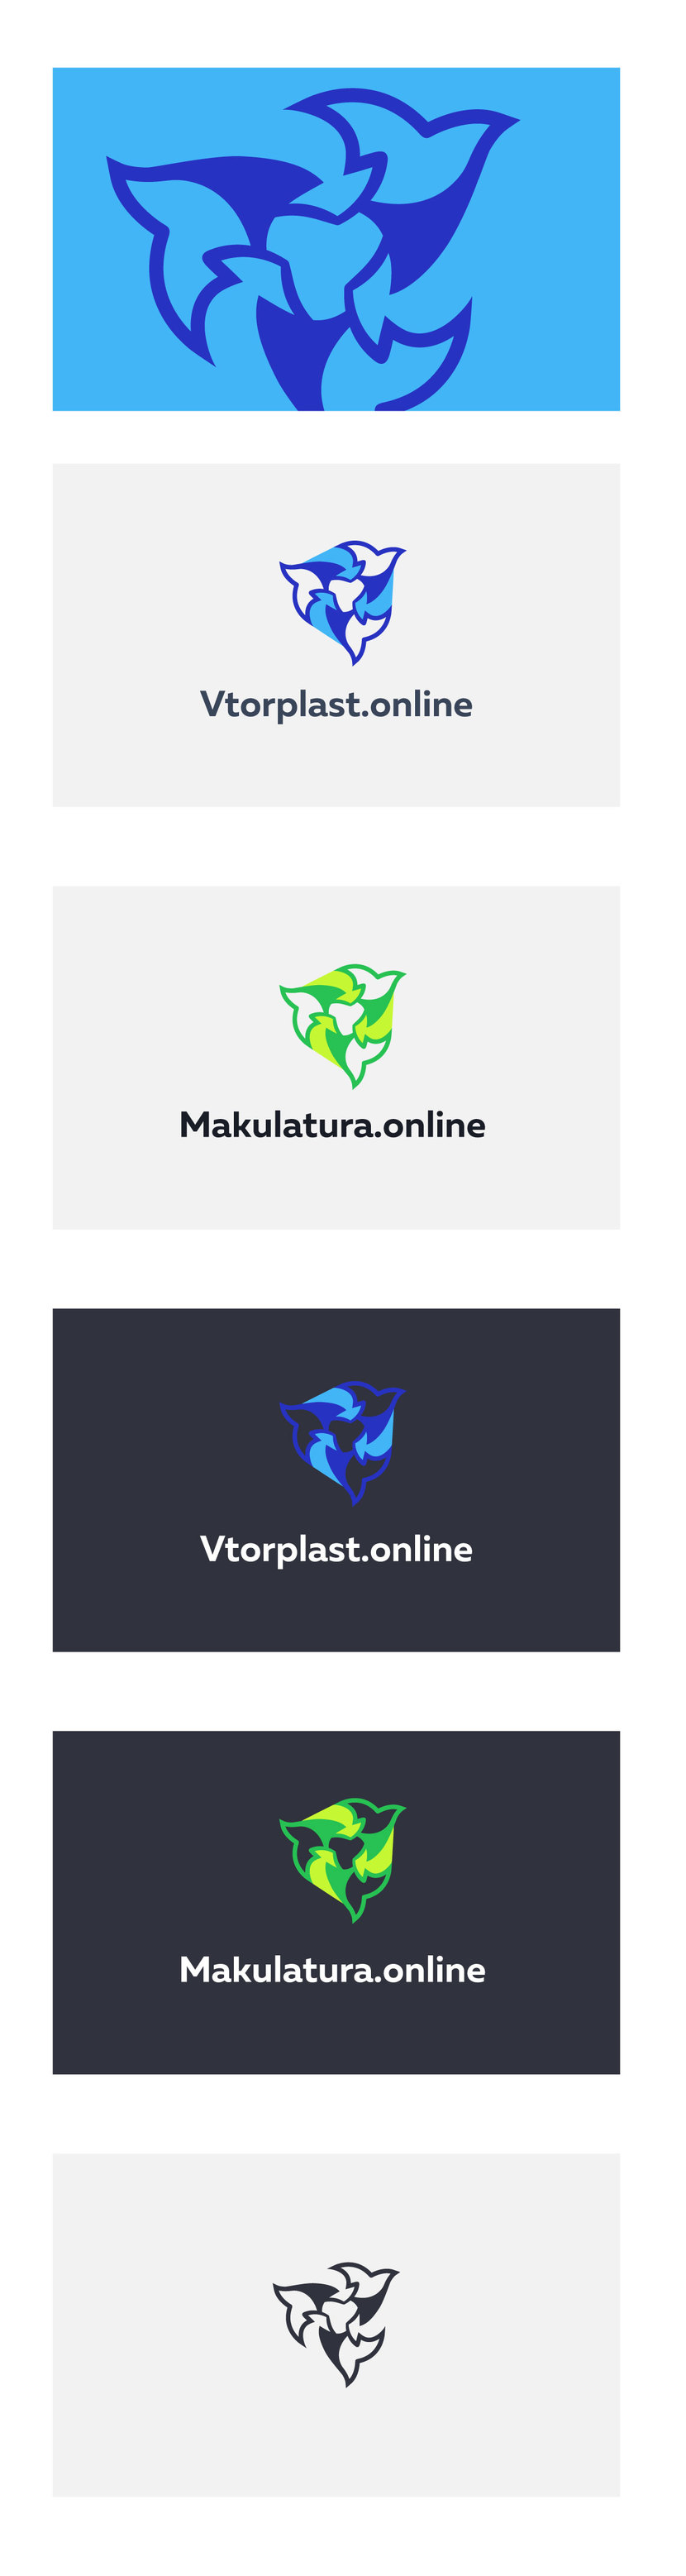 Птица + знак переработки. - Makulatura.online & Vtorplast.online Создание единого фирменного стиля